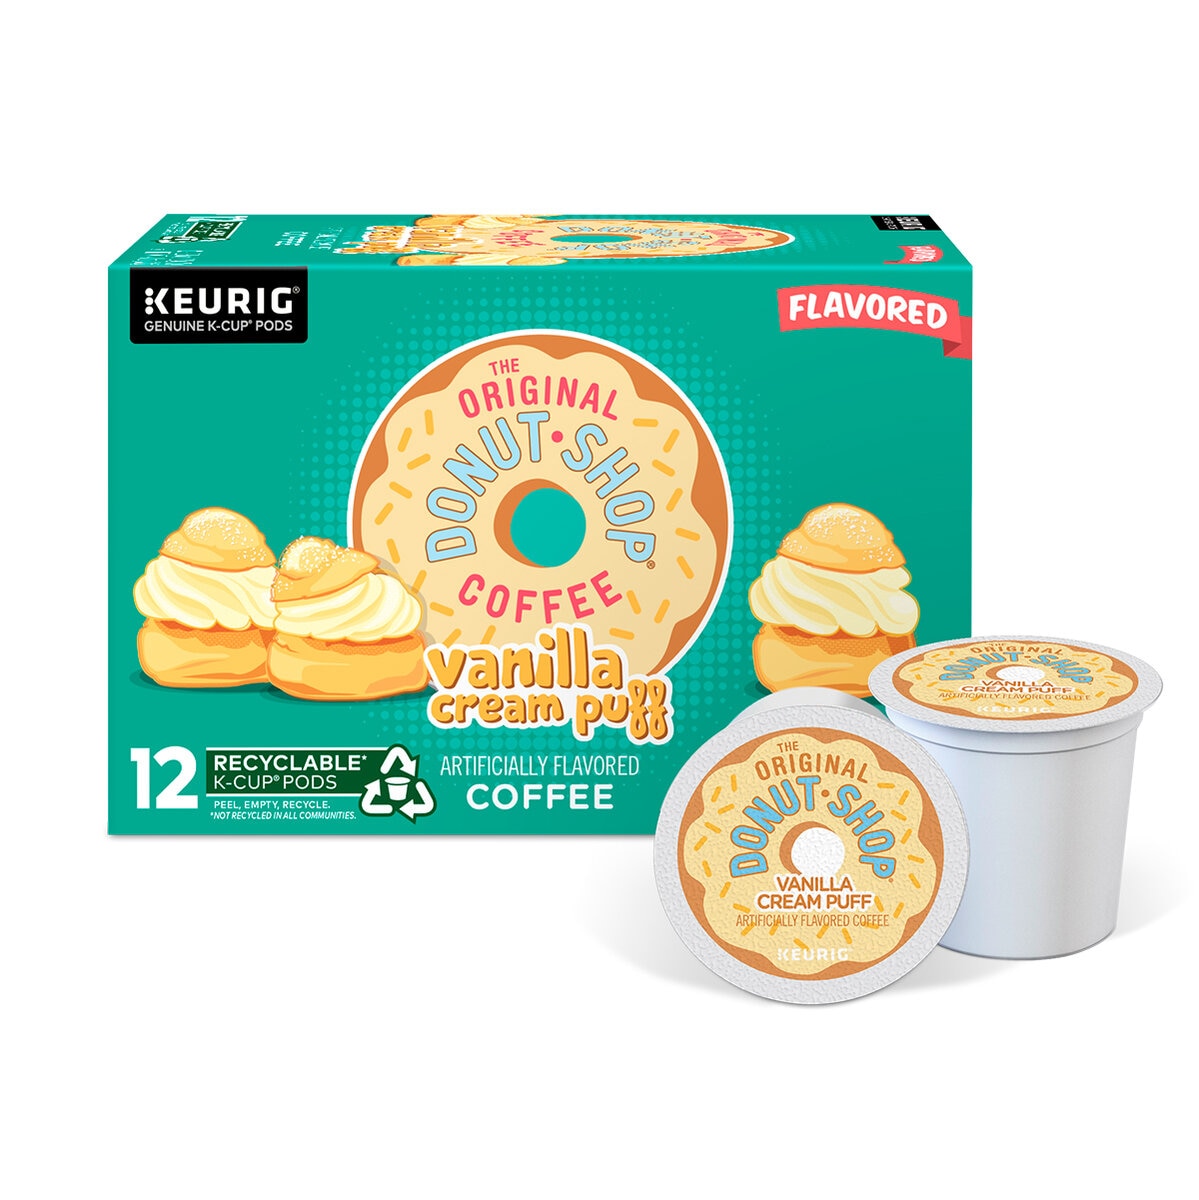 Keurig, The Original Donut Shop Coffee Vanilla Cream, 72 cápsulas K-Cup